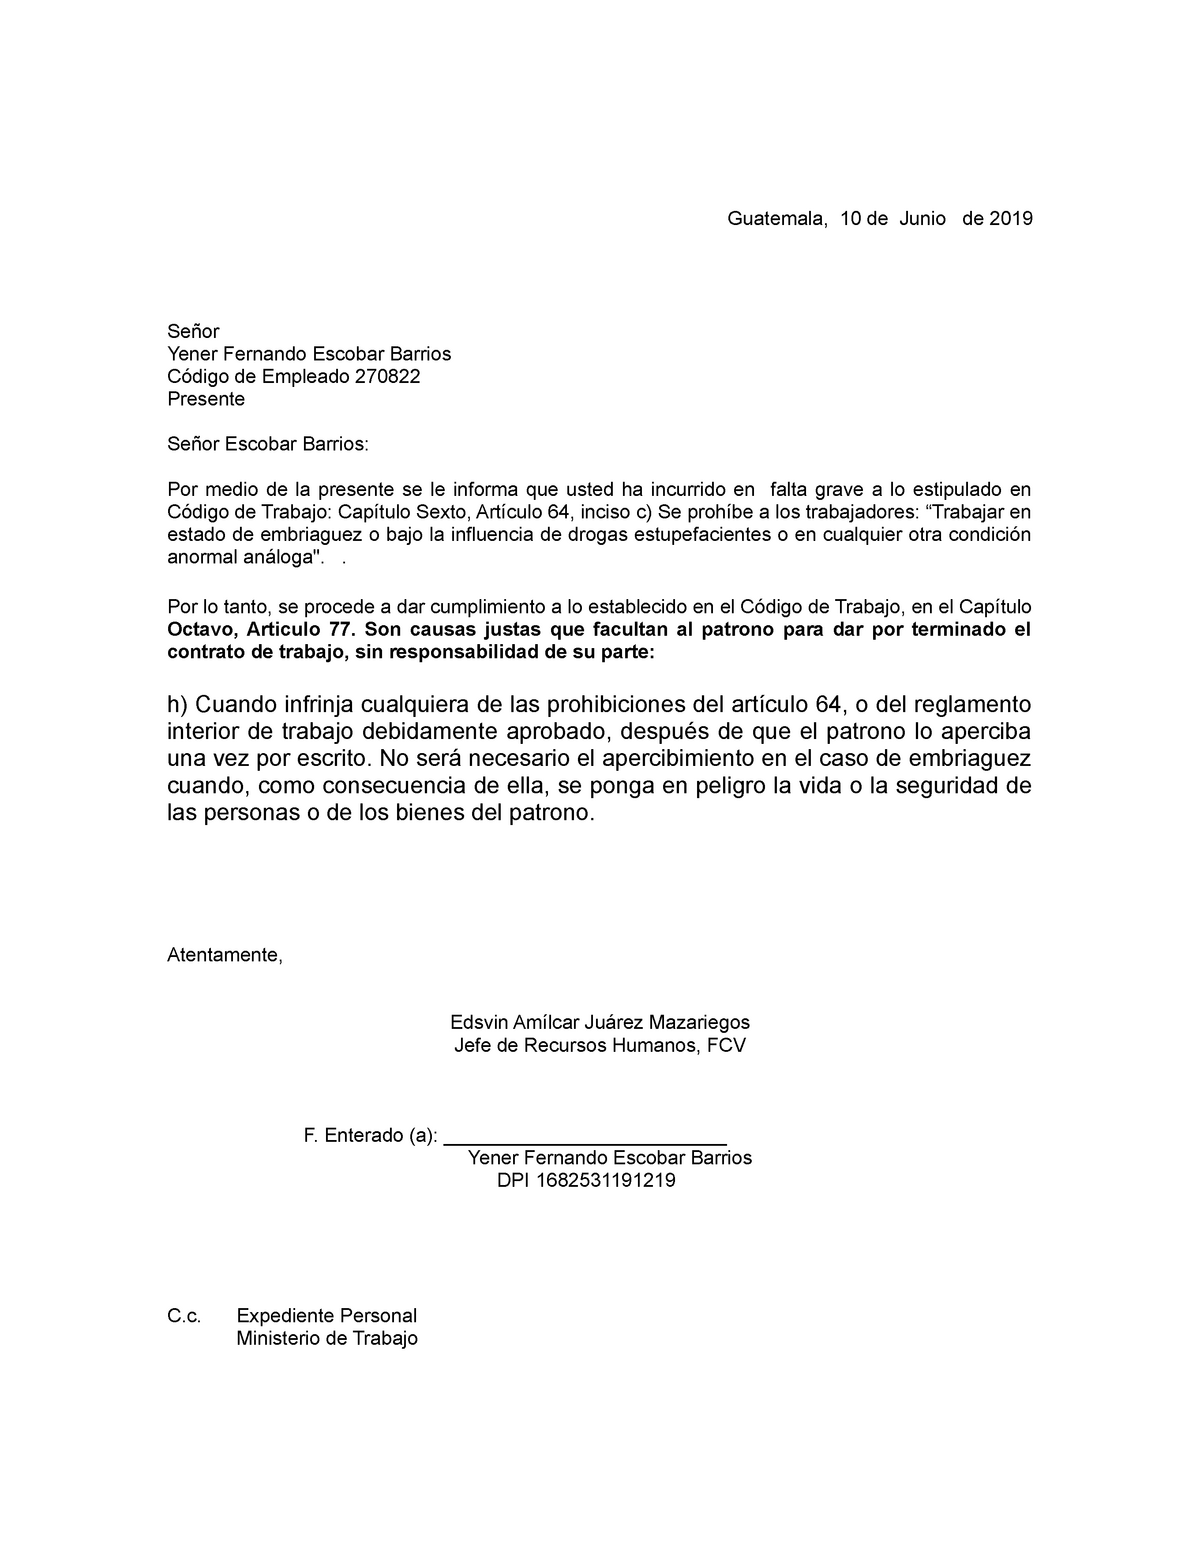 Carta de despido modelo 1  Guatemala, 10 de Junio de 2019 Señor Yener